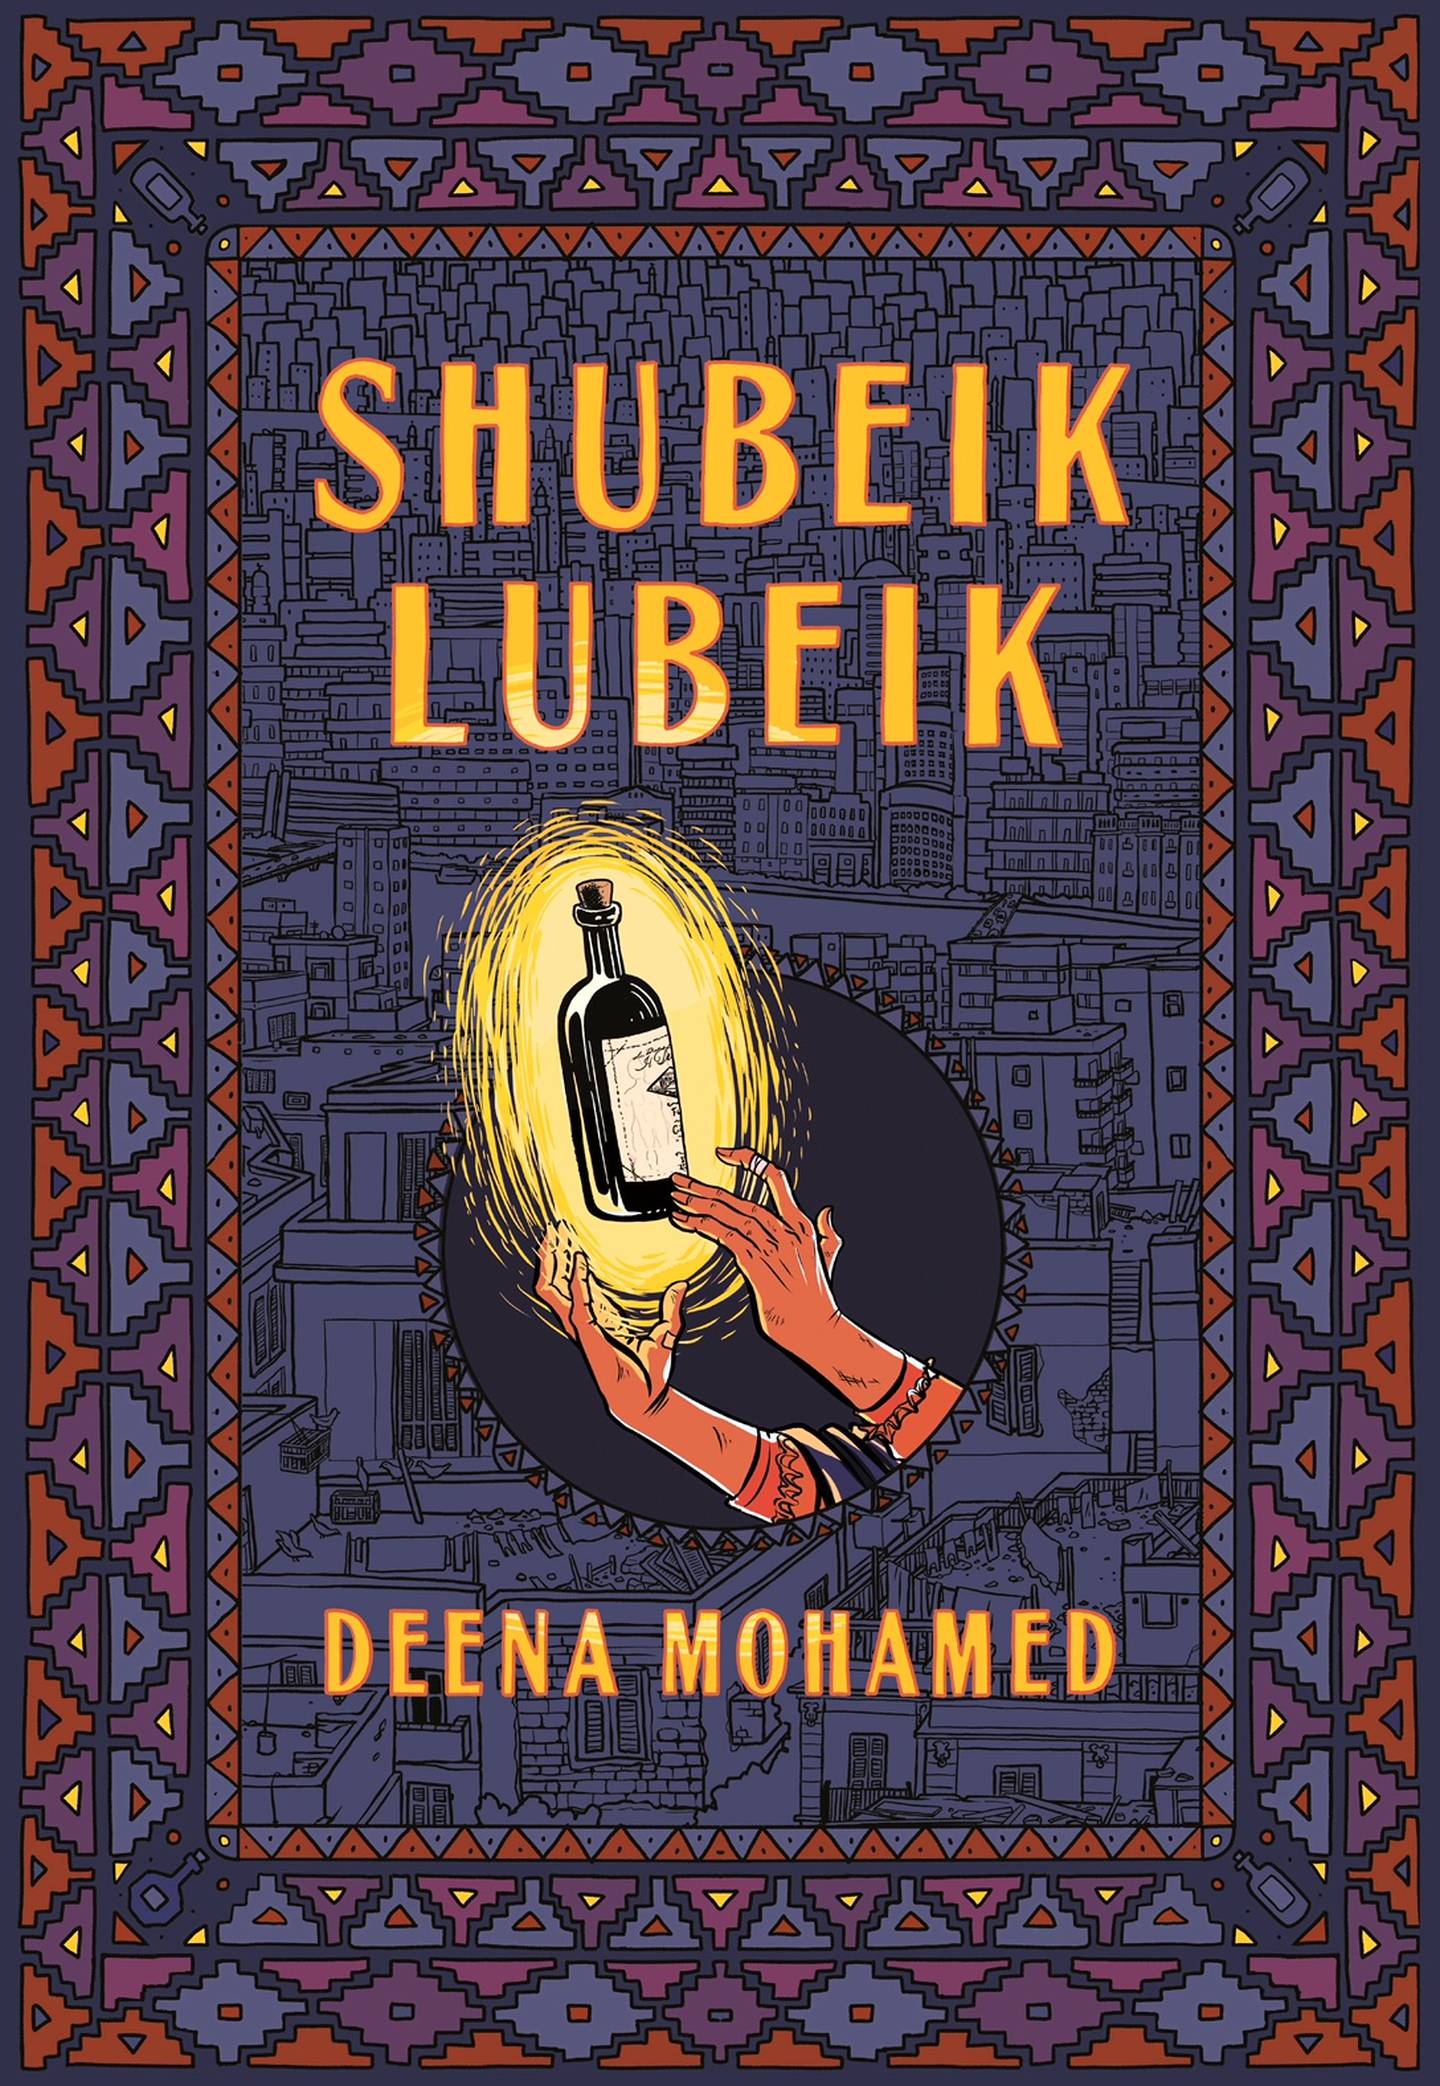 Shubeik Lubeik de Deena Mohamed imagine un Caire alternatif fantastique où les souhaits se réalisent vraiment.  Photo: Deena Mohamed